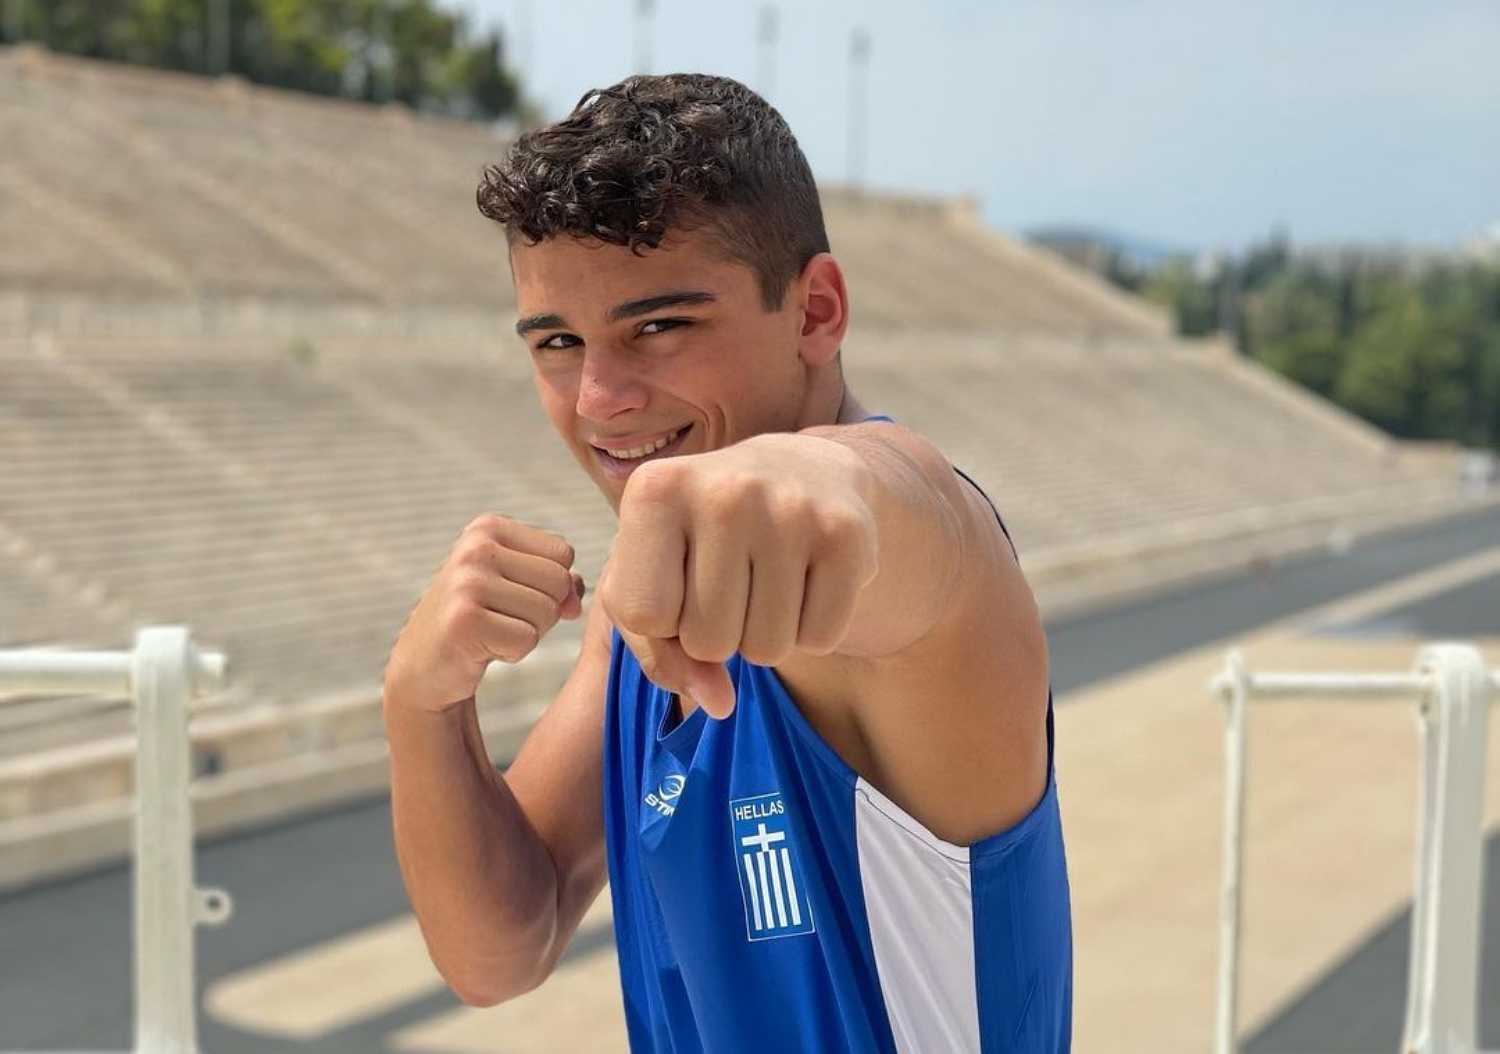 Έφυγε από τη ζωή ο 16χρονος πρωταθλητής πυγμαχίας, Βασίλης Τόπαλος